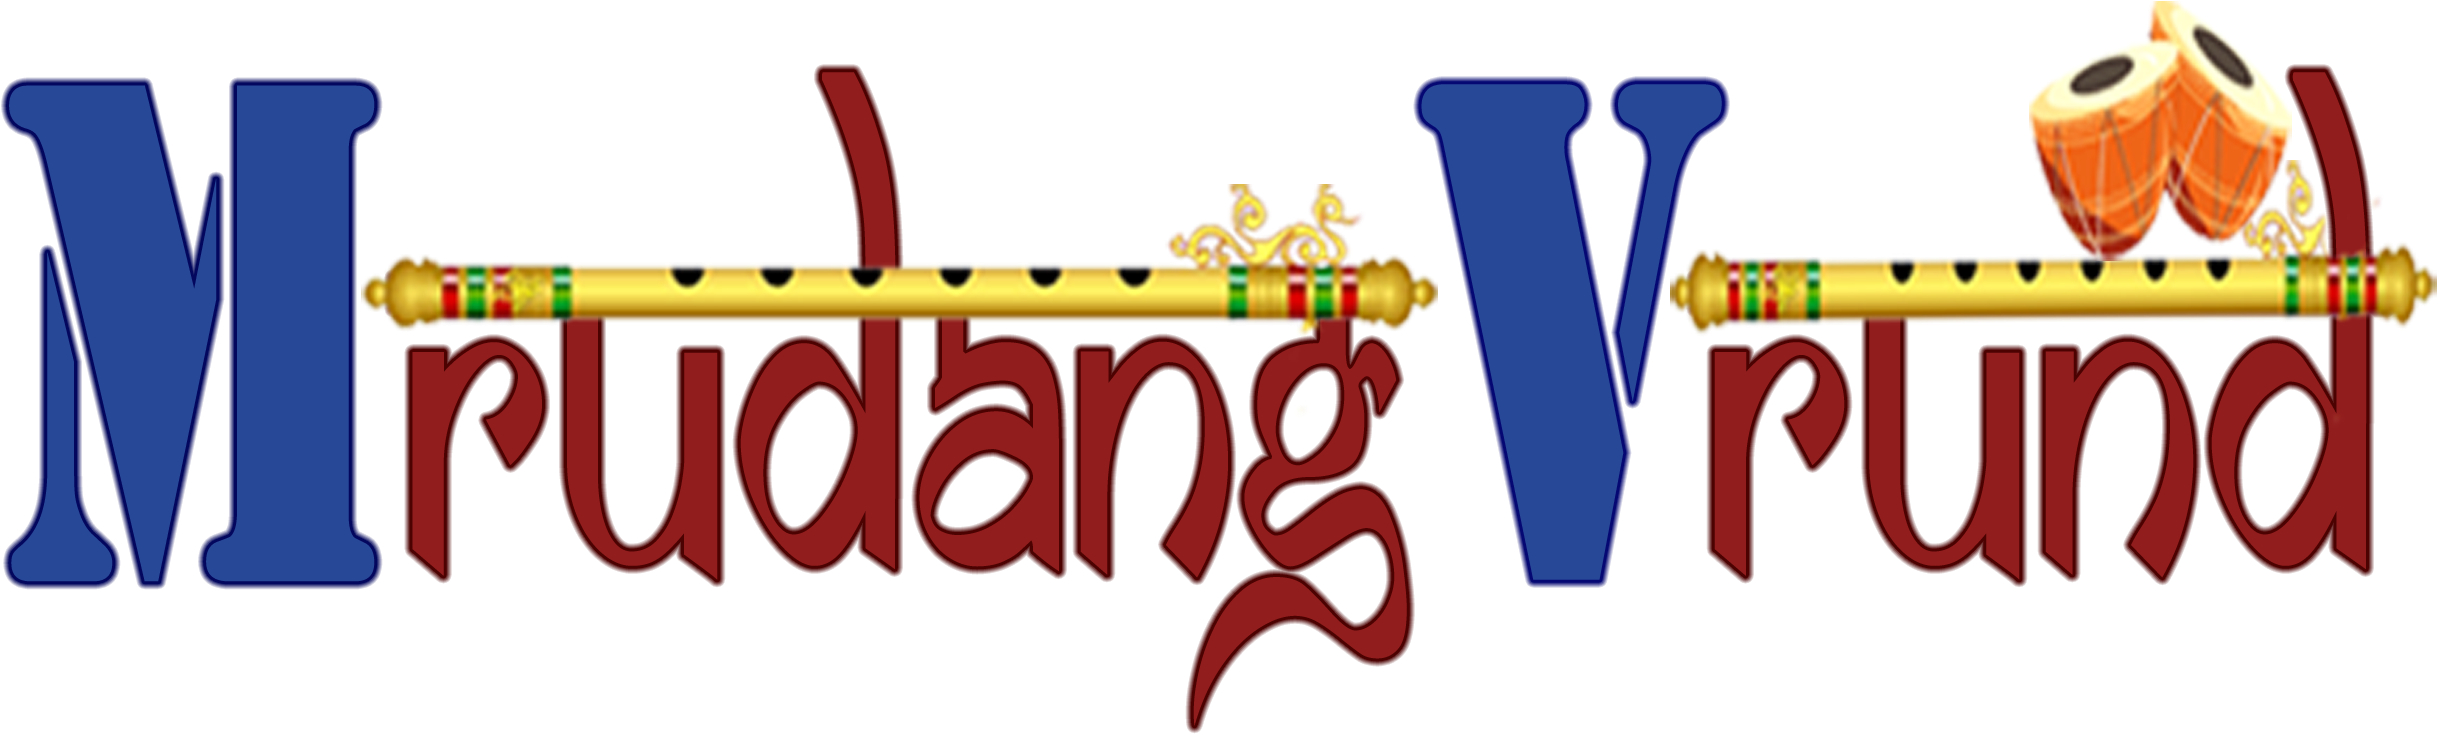 Mridang Vrund Logo PNG image